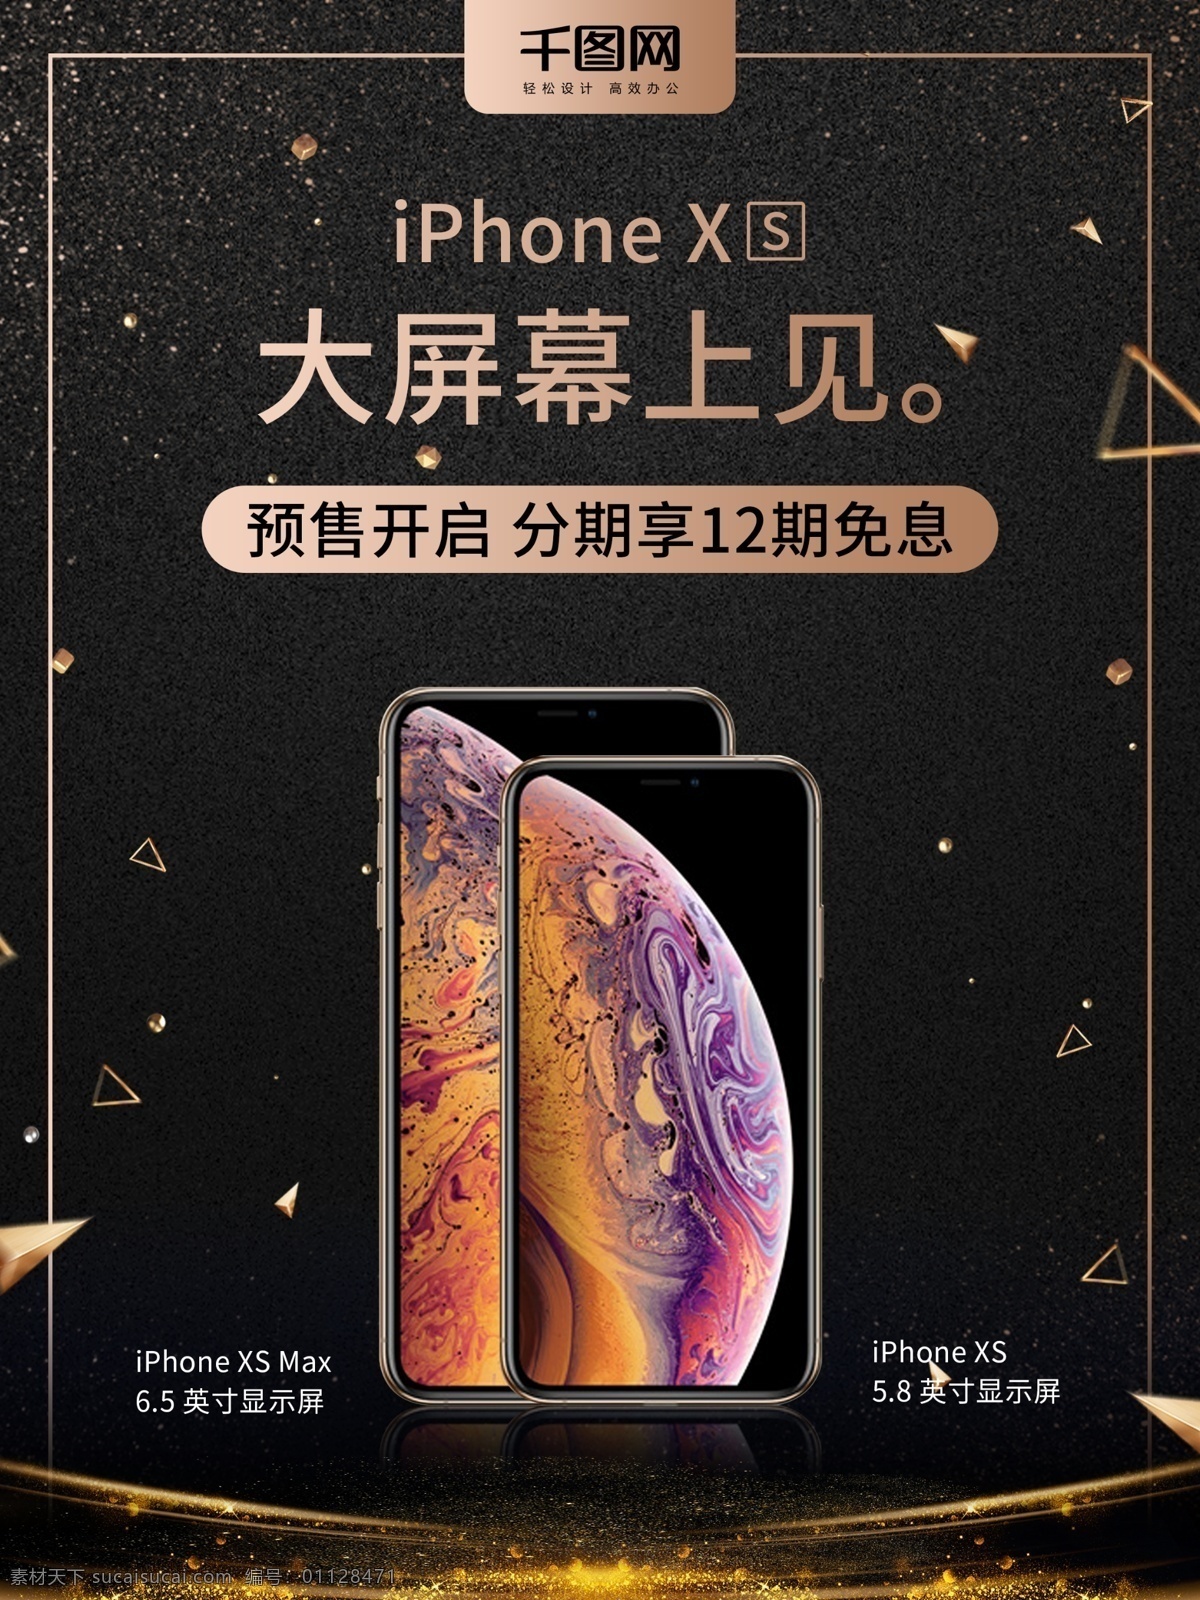 iphonexs 新品上市 促销 海报 iphone xs 苹果手机 手机促销 最新手机 iphonexsmax 分期购机